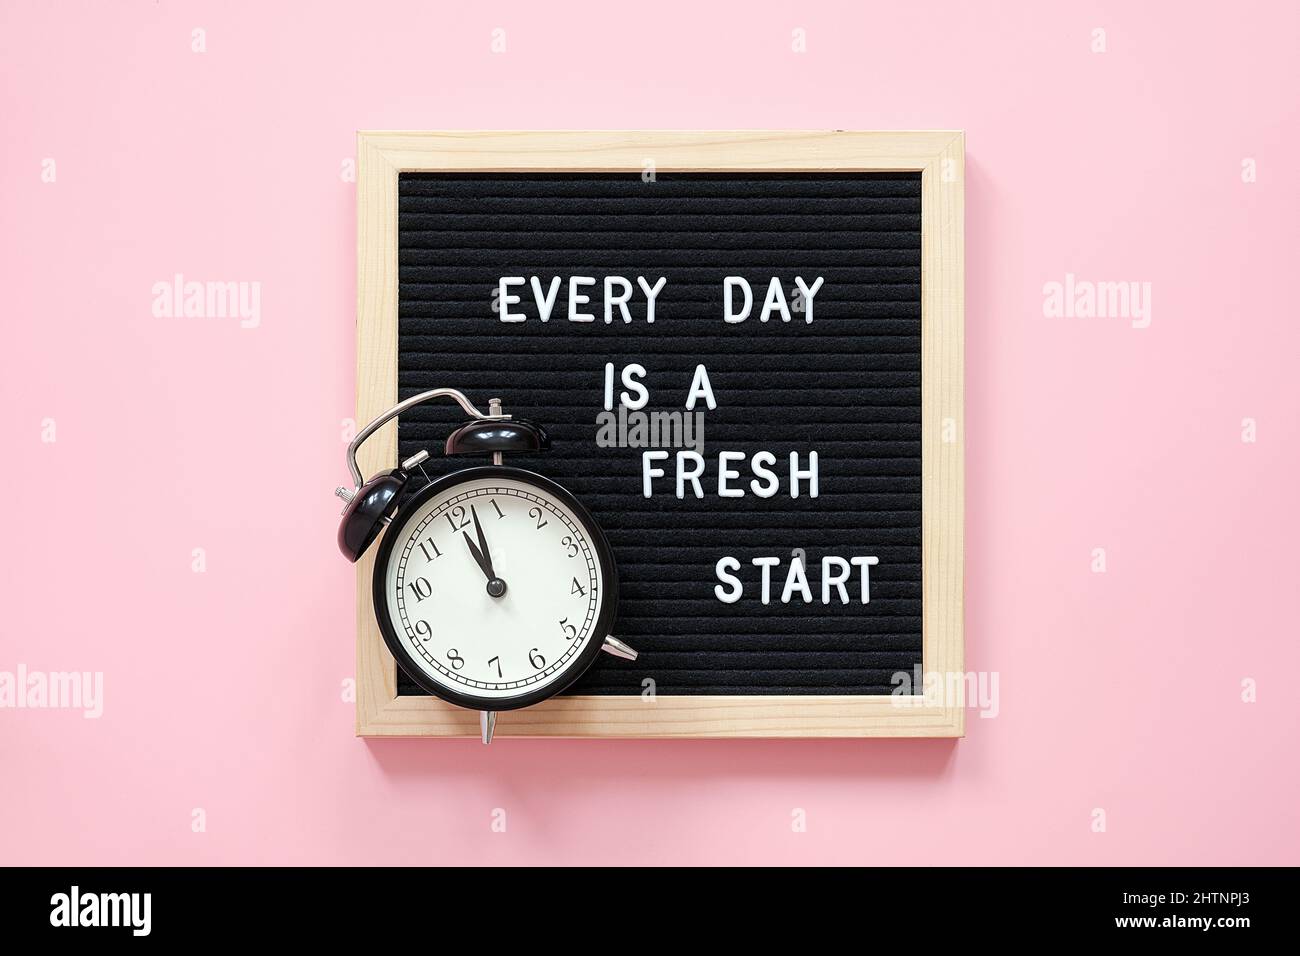 Cada día es un comienzo fresco. Cita motivacional en pizarra de letras negras y reloj de alarma negro sobre fondo rosa. Concepto inspirador cita del día. Foto de stock